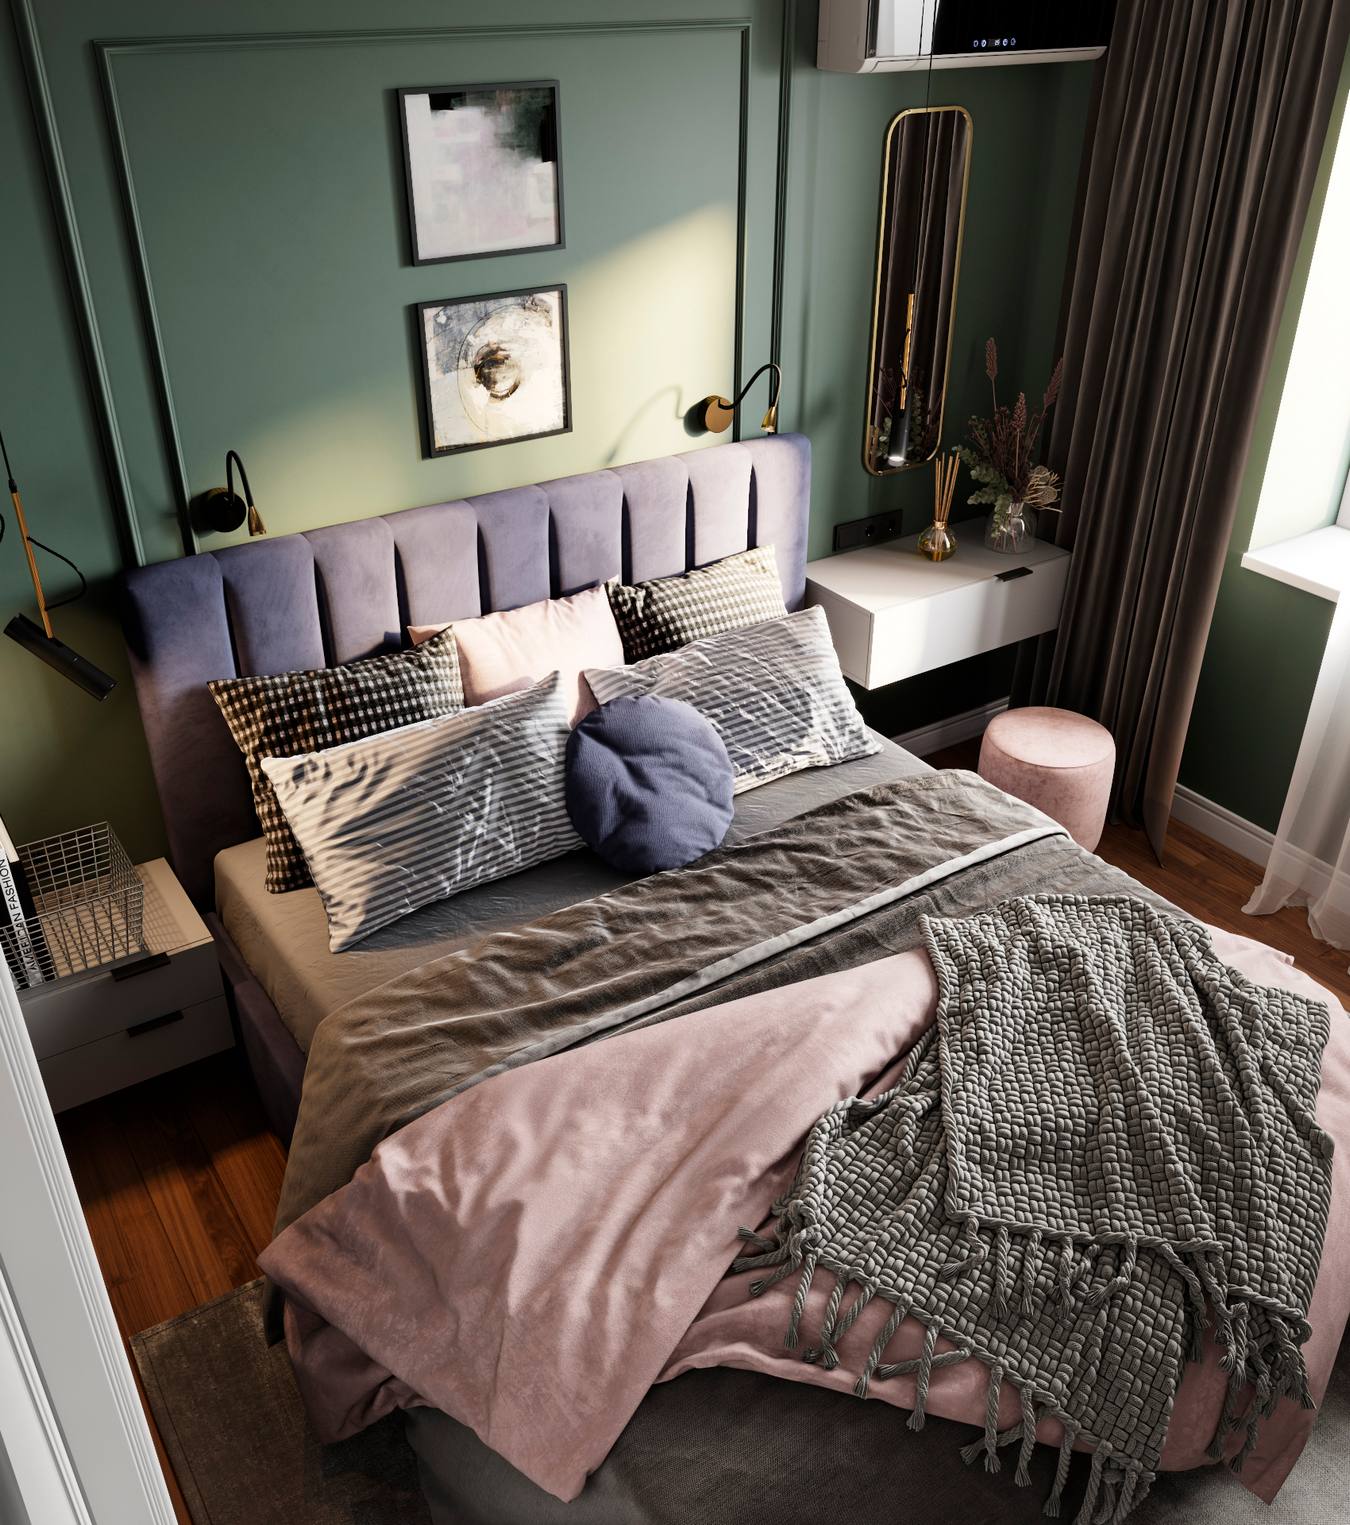 Phòng ngủ của bố mẹ sử dụng sơn tường màu xanh lá kết hợp với những gam màu hồng phấn, tím oải hương, xám nhạt để tạo nên vẻ đẹp thời trang, ấm cúng.